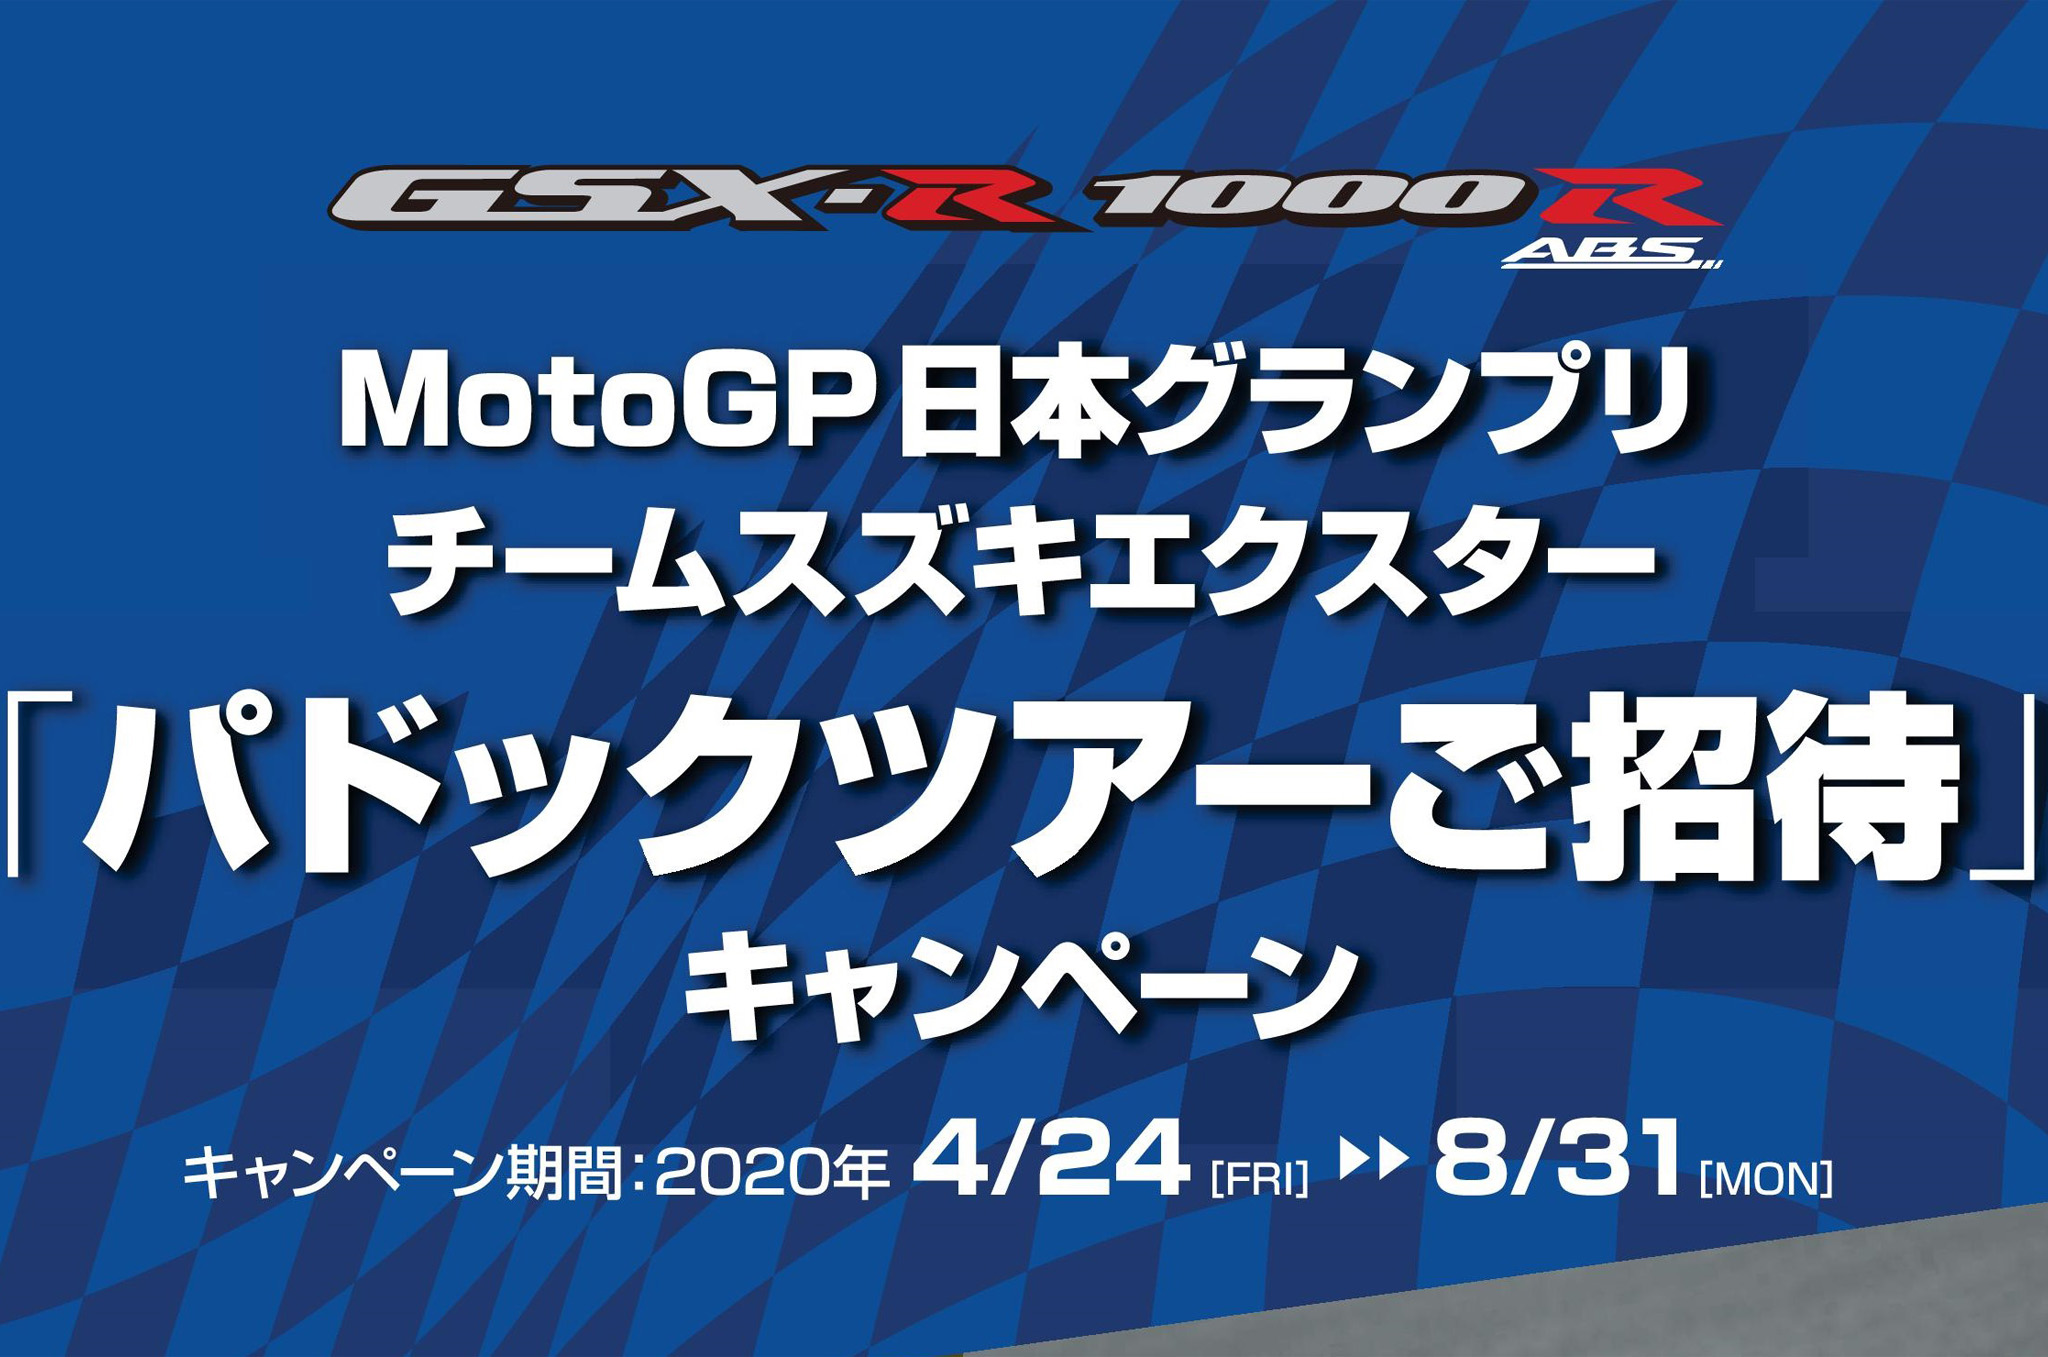 スズキがmotogp日本グランプリの パドックツアー ご招待キャンペーン を開催 愛車とリフレッシュしたい大人のための軽井沢 浅間エリアおでかけマガジンkaru 2 カルカル